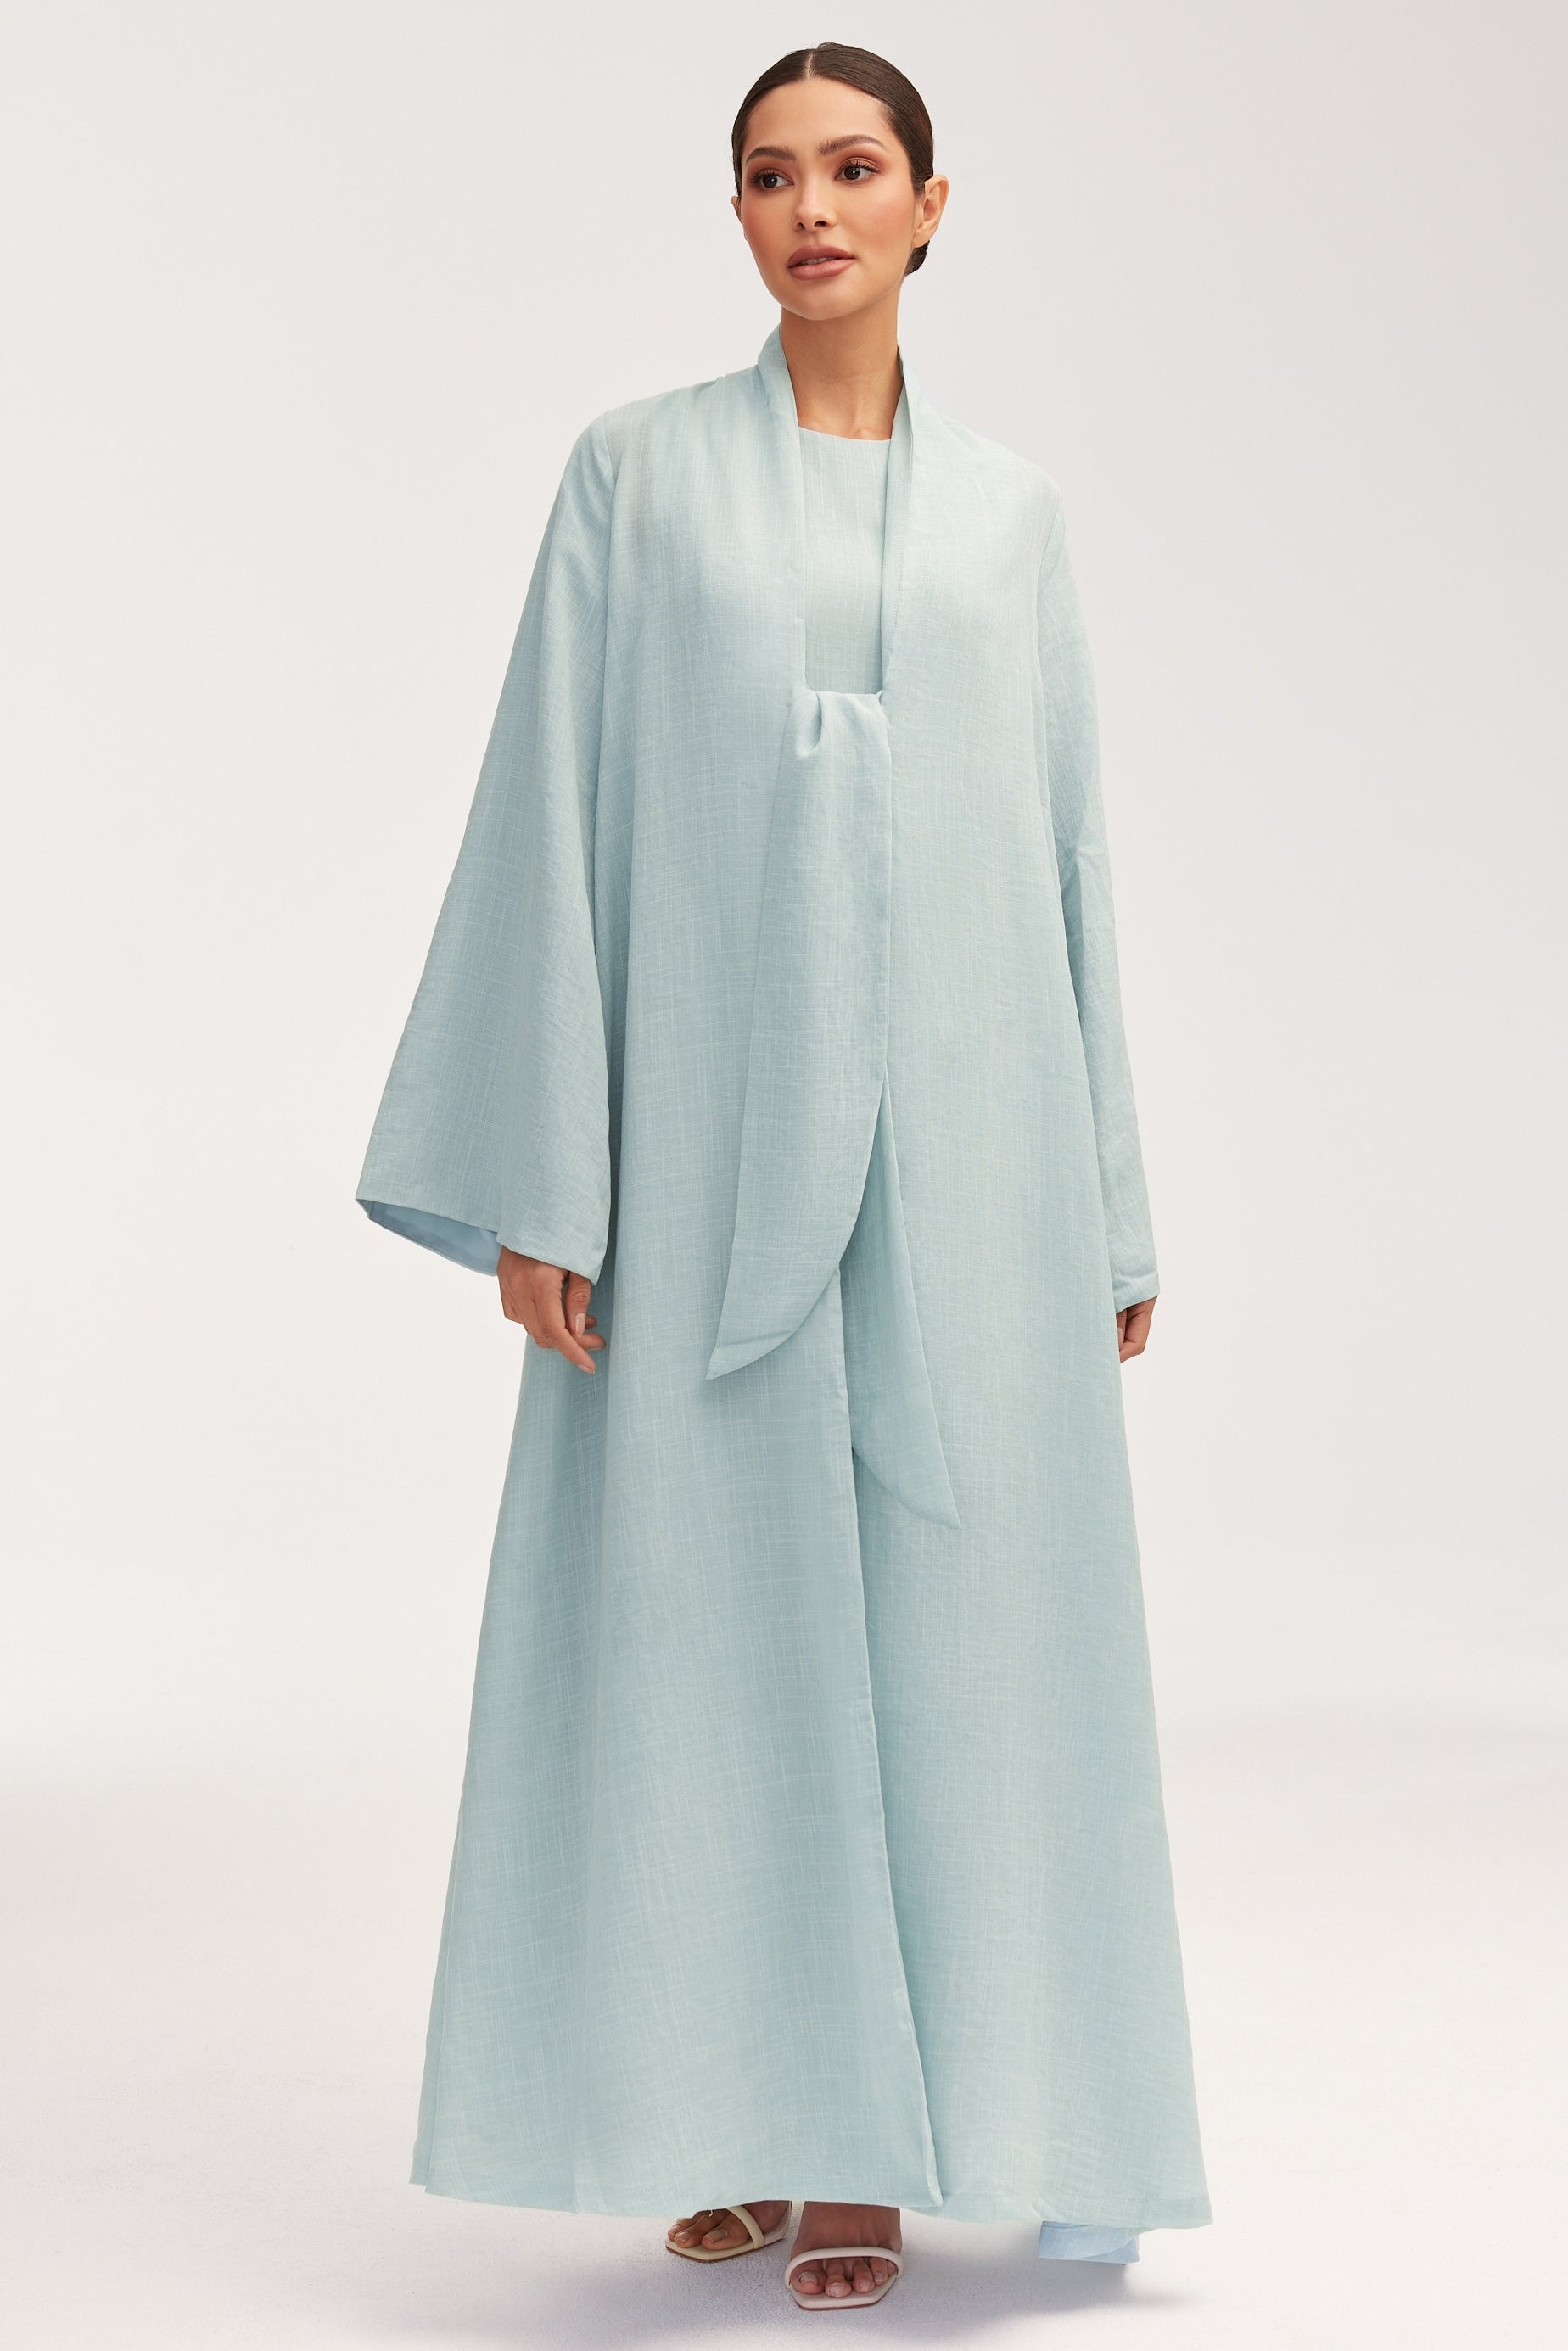 Azka Tie Front Abaya - Cucumber Clothing Veiled 